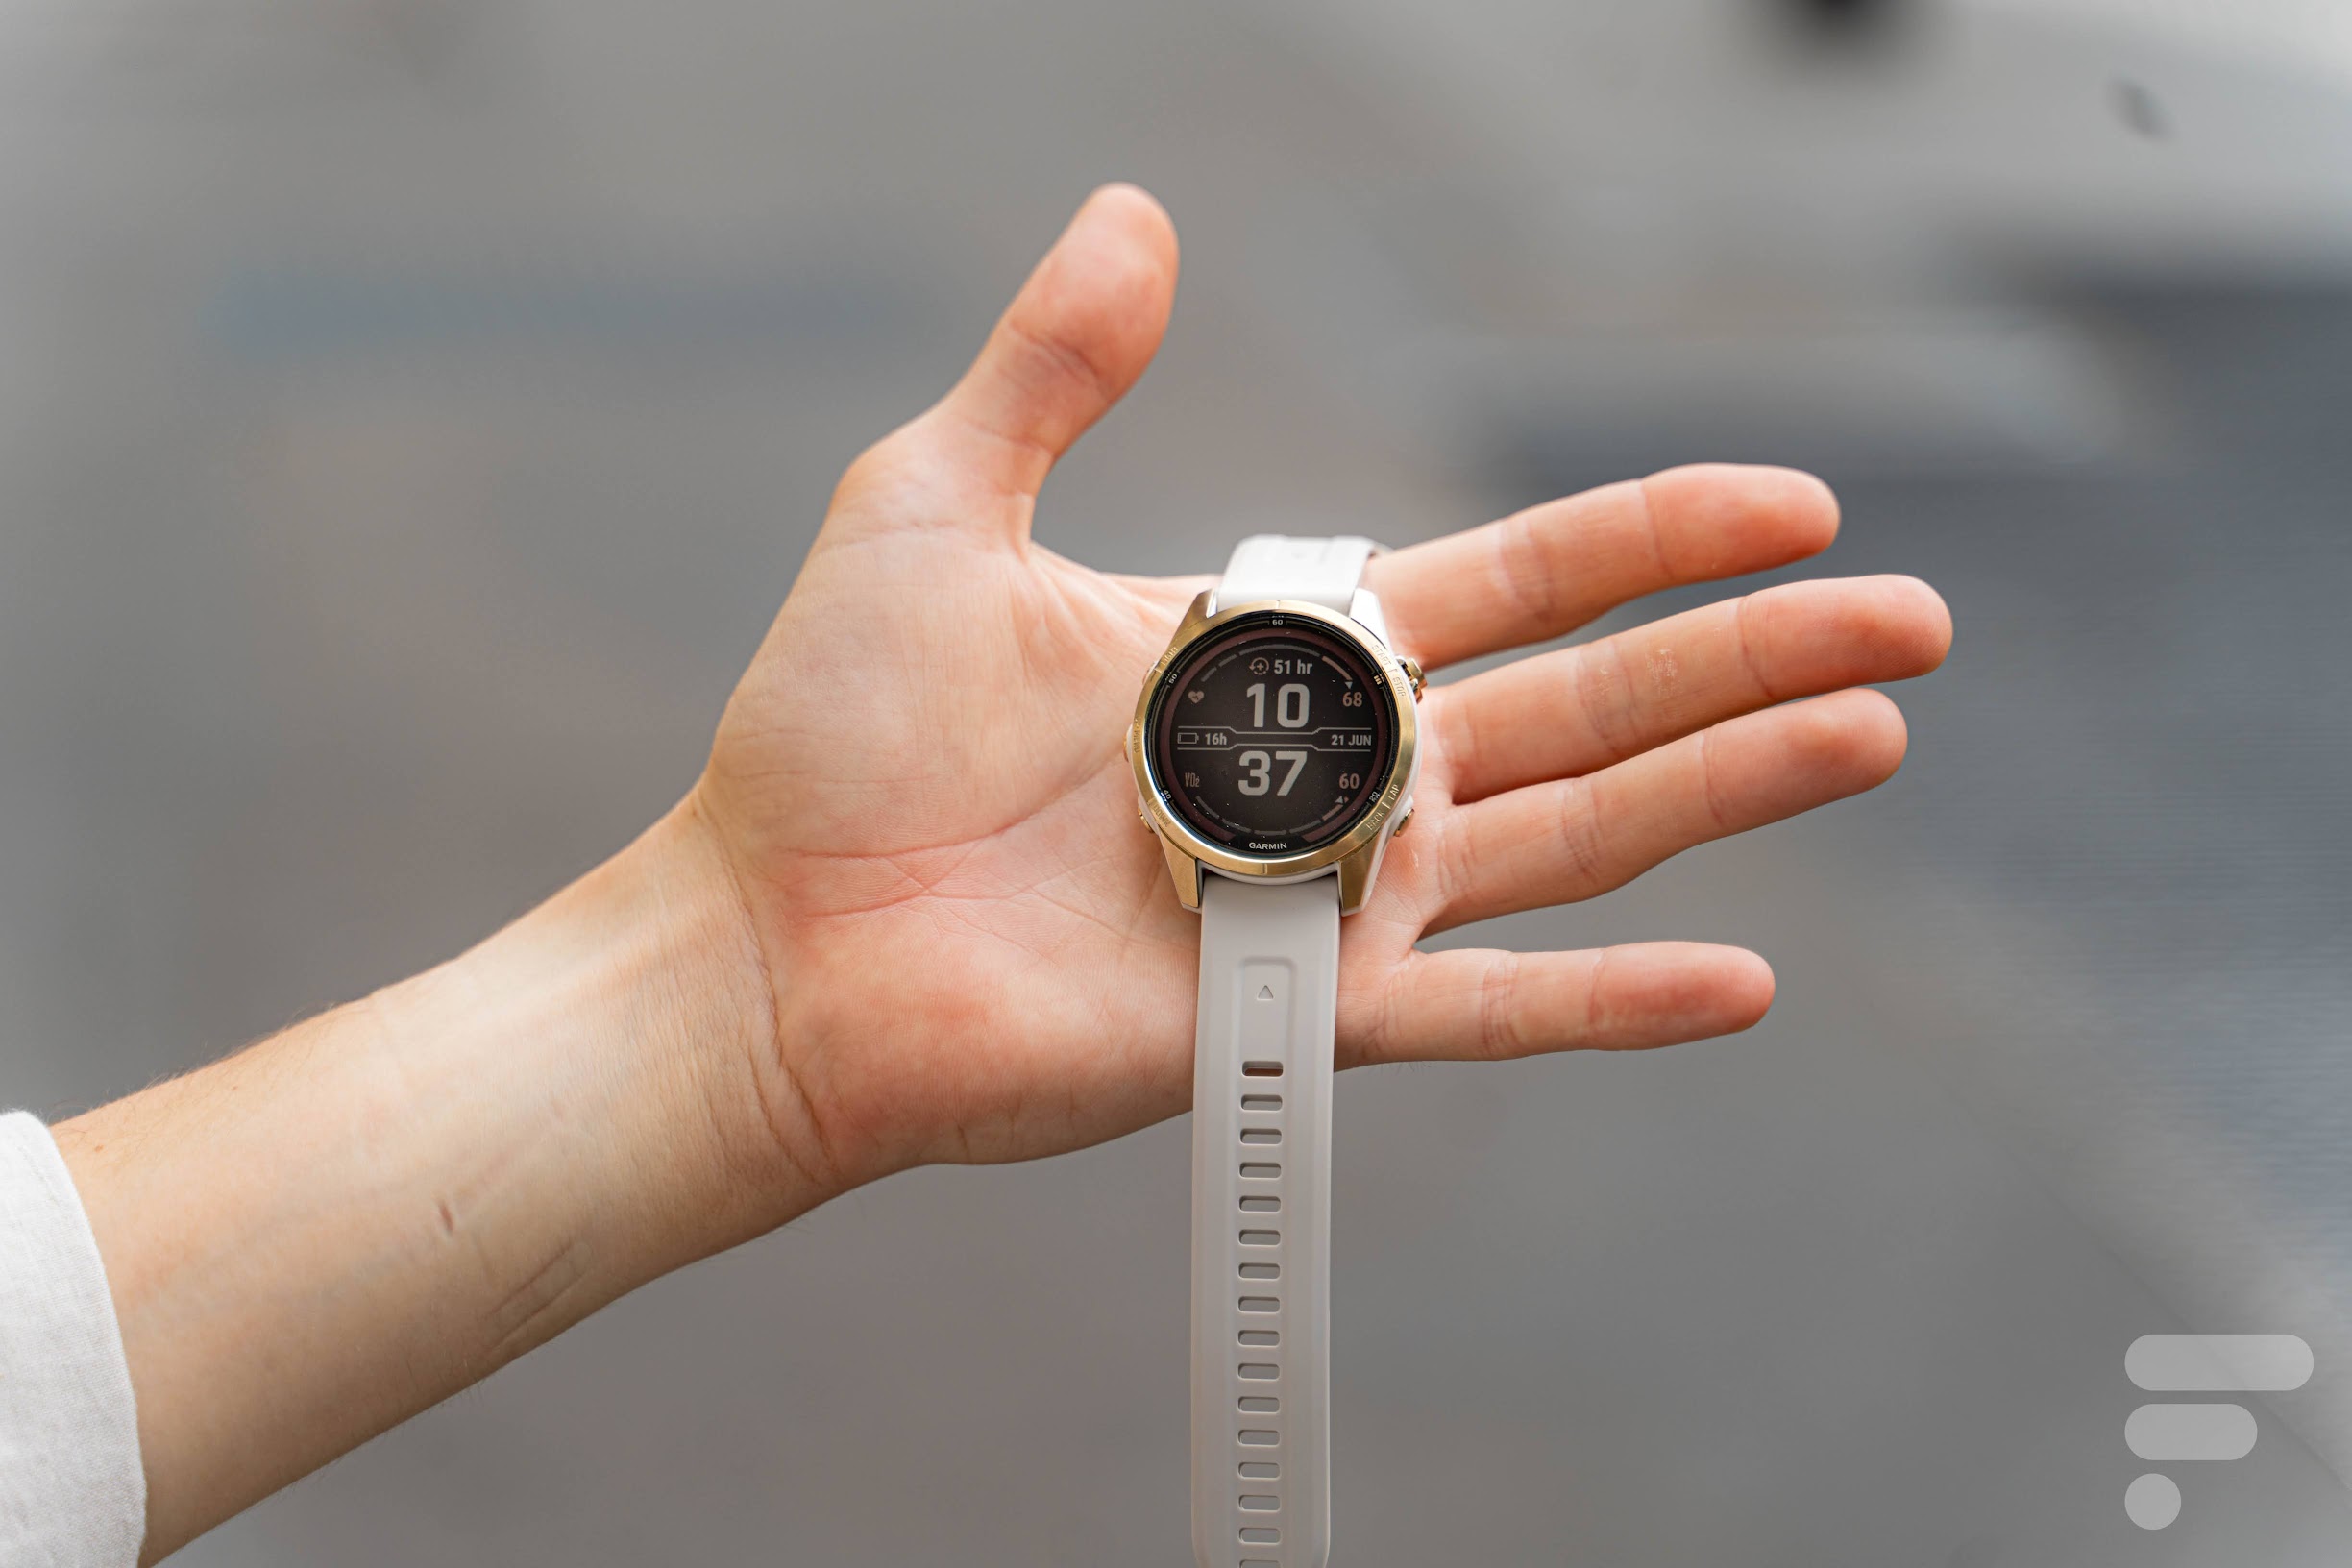 Test 2023 Garmin Vivoactive 4S : Avis sur cette montre à prix